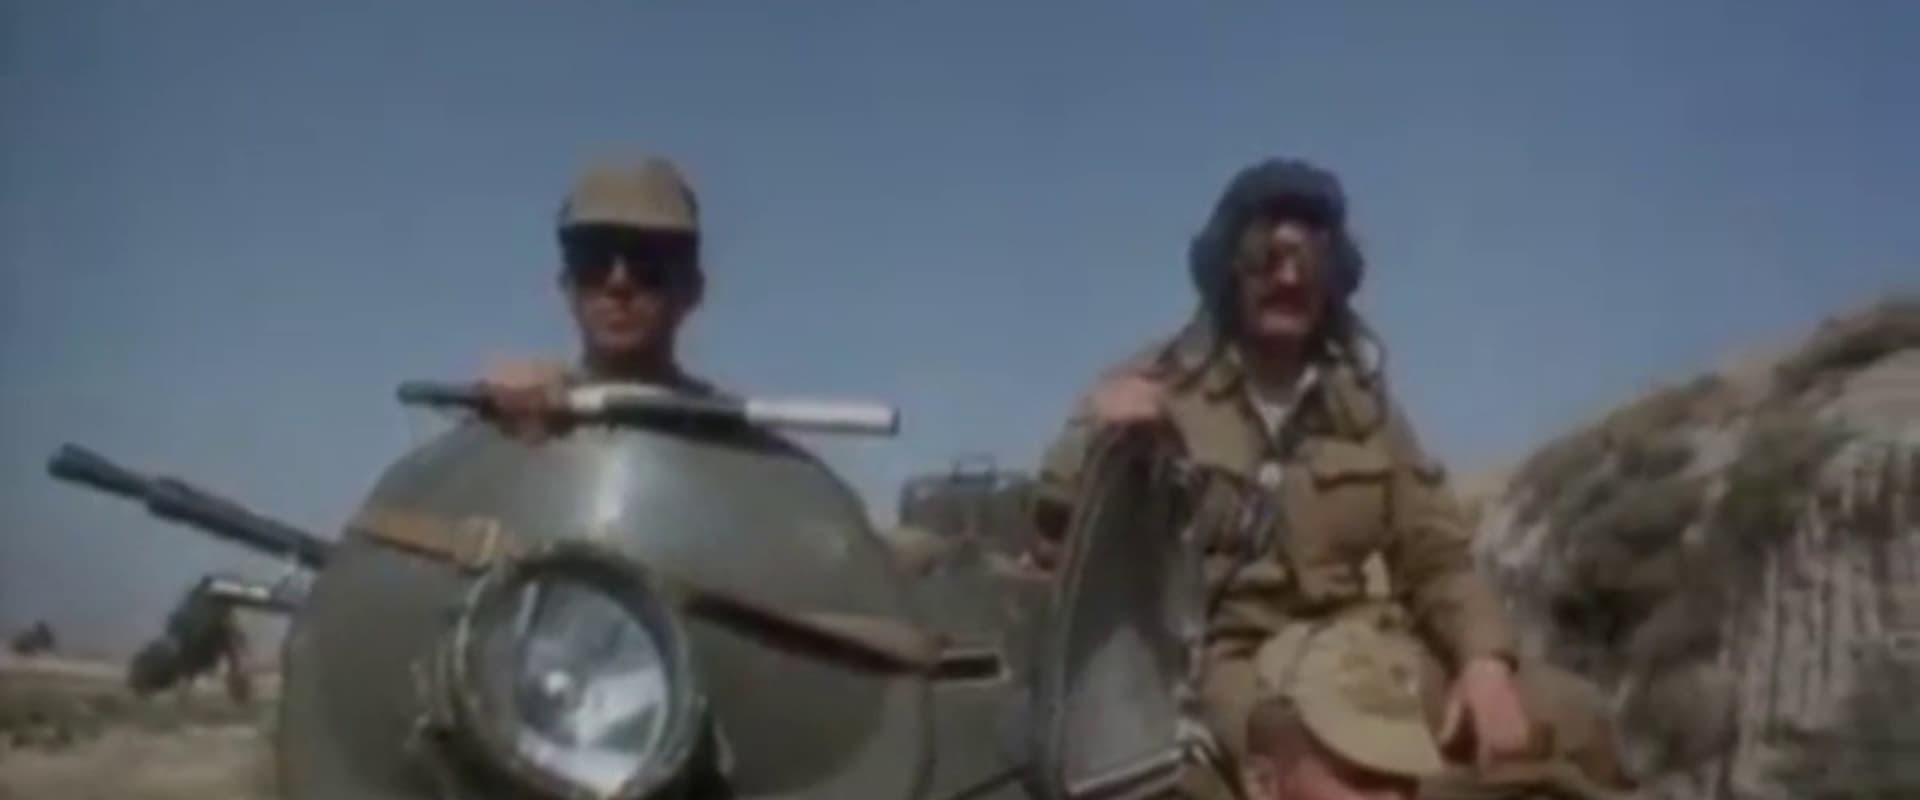 Afgan: The Soviet Experience